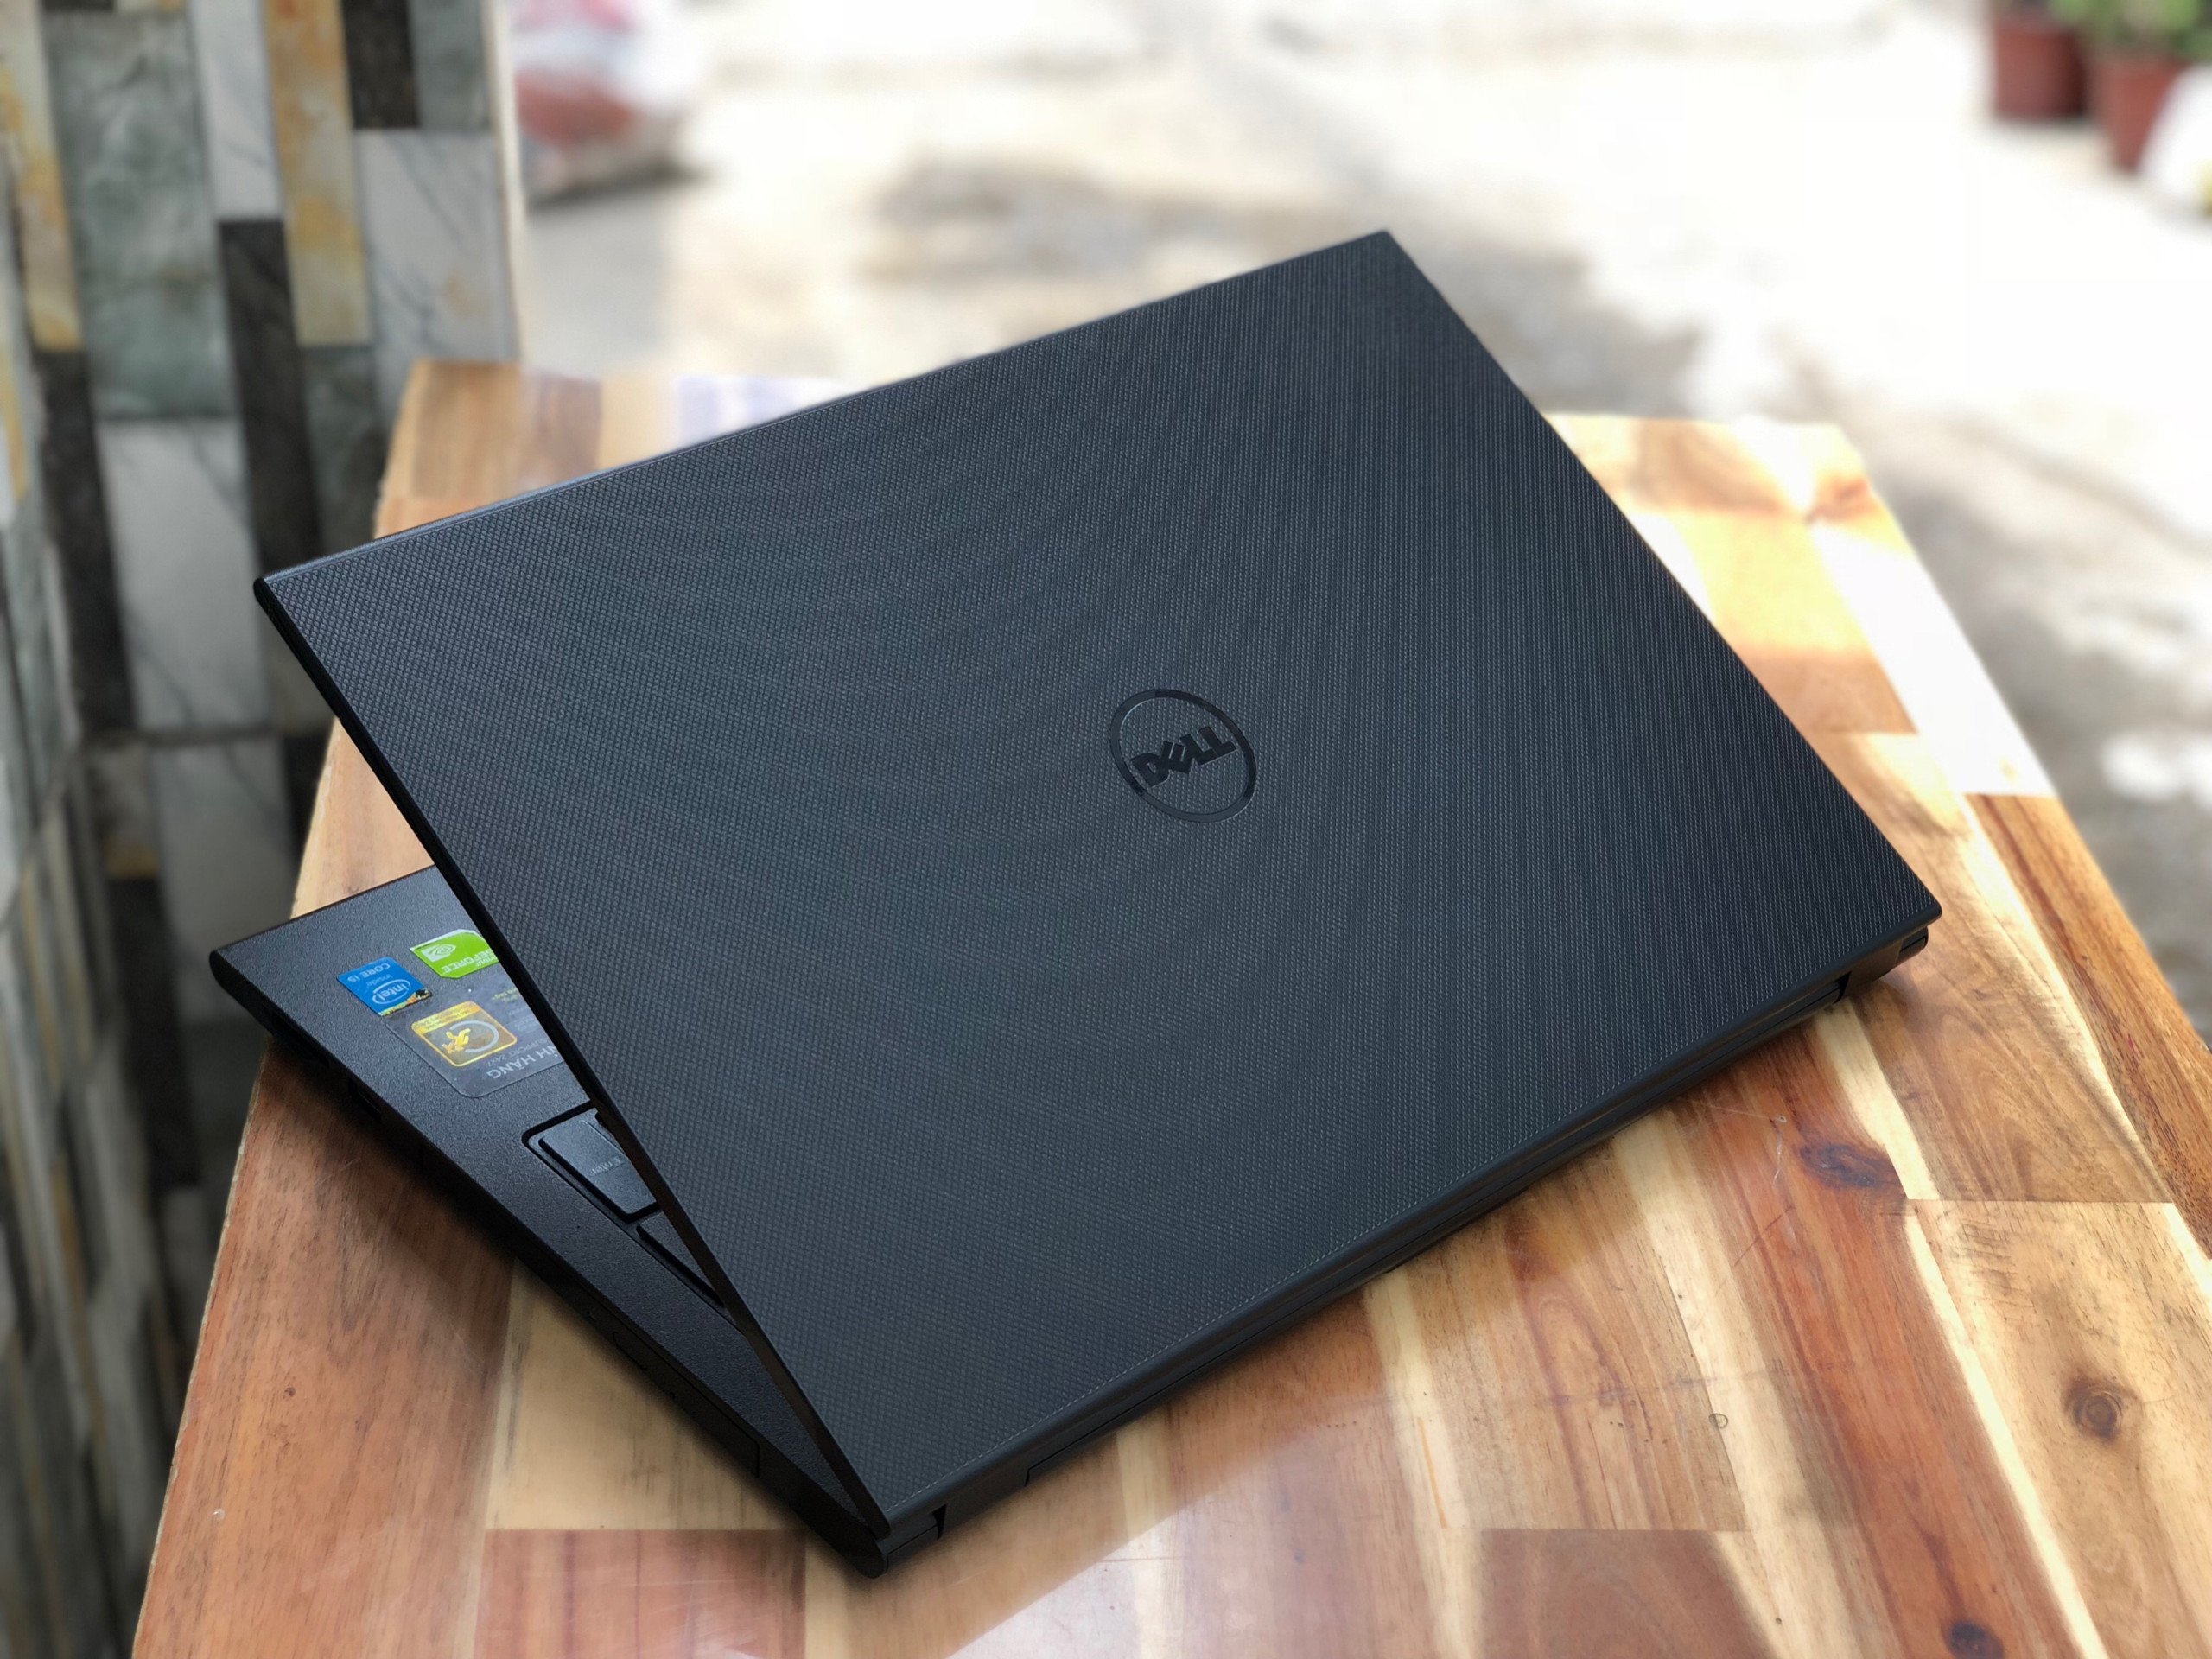 Laptop Dell Inspiron 3542, i7 4510U 8G SSD128+320G Vga GT840 2G Đẹp Keng Giá rẻ3